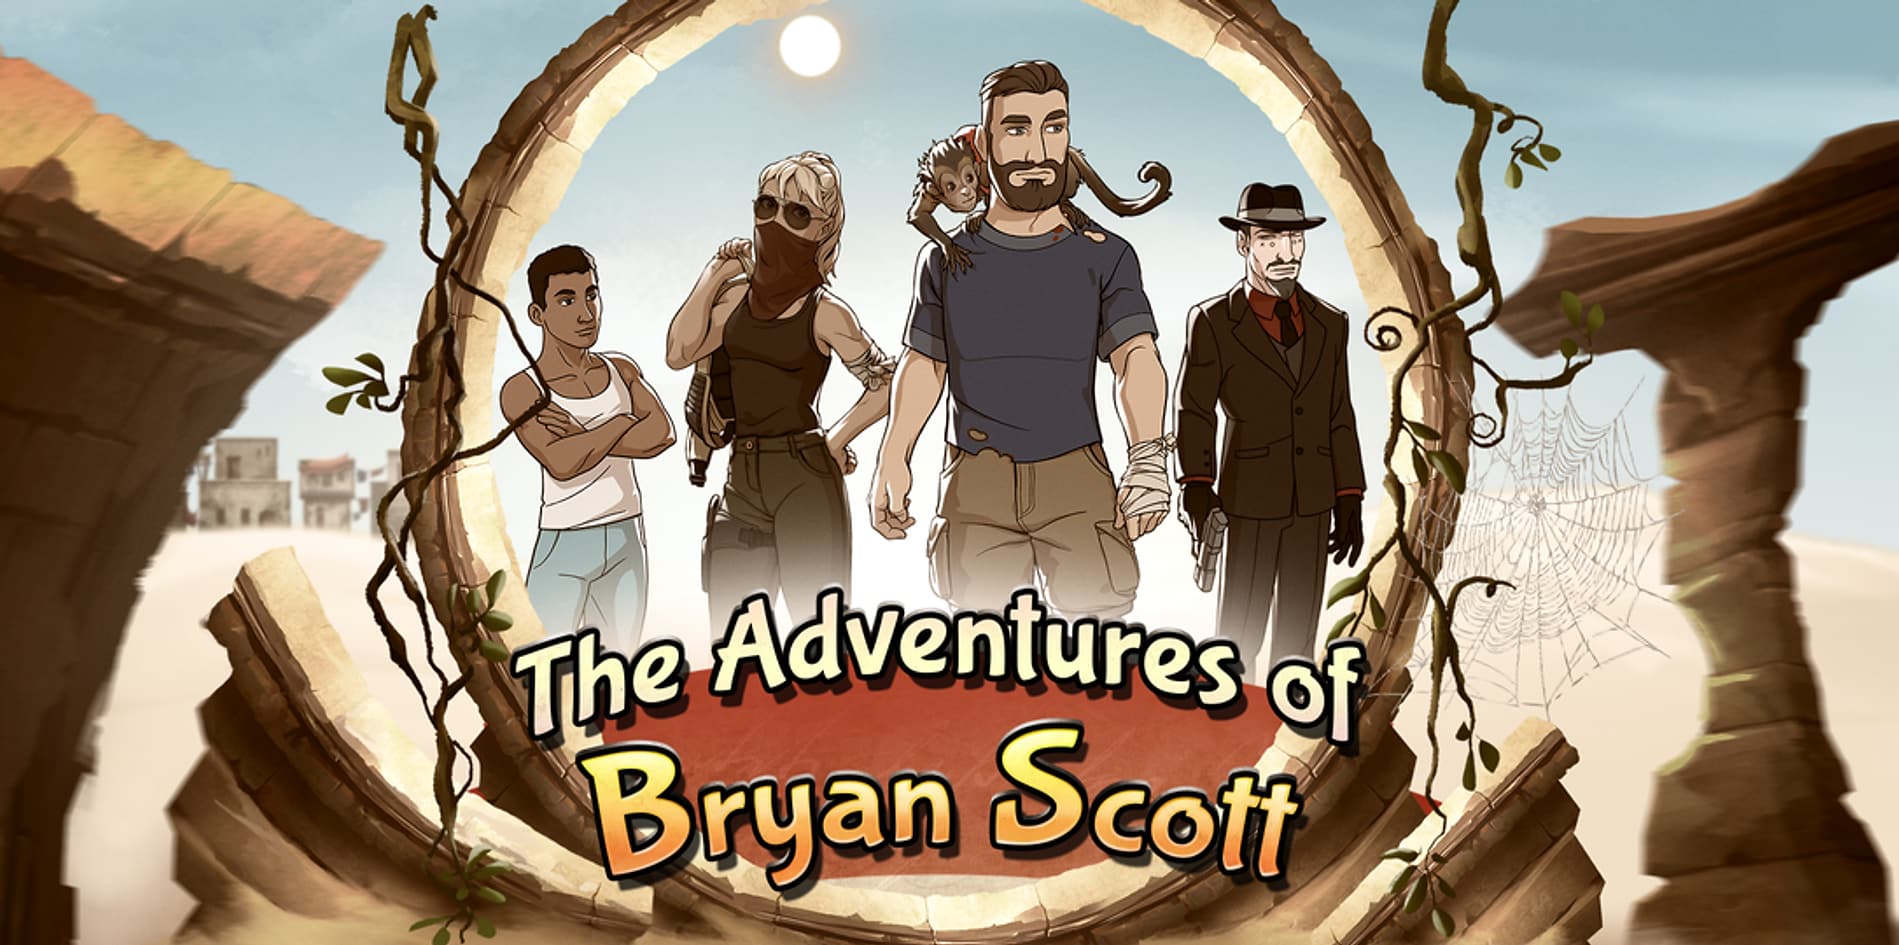 The Adventure of Bryan Scott